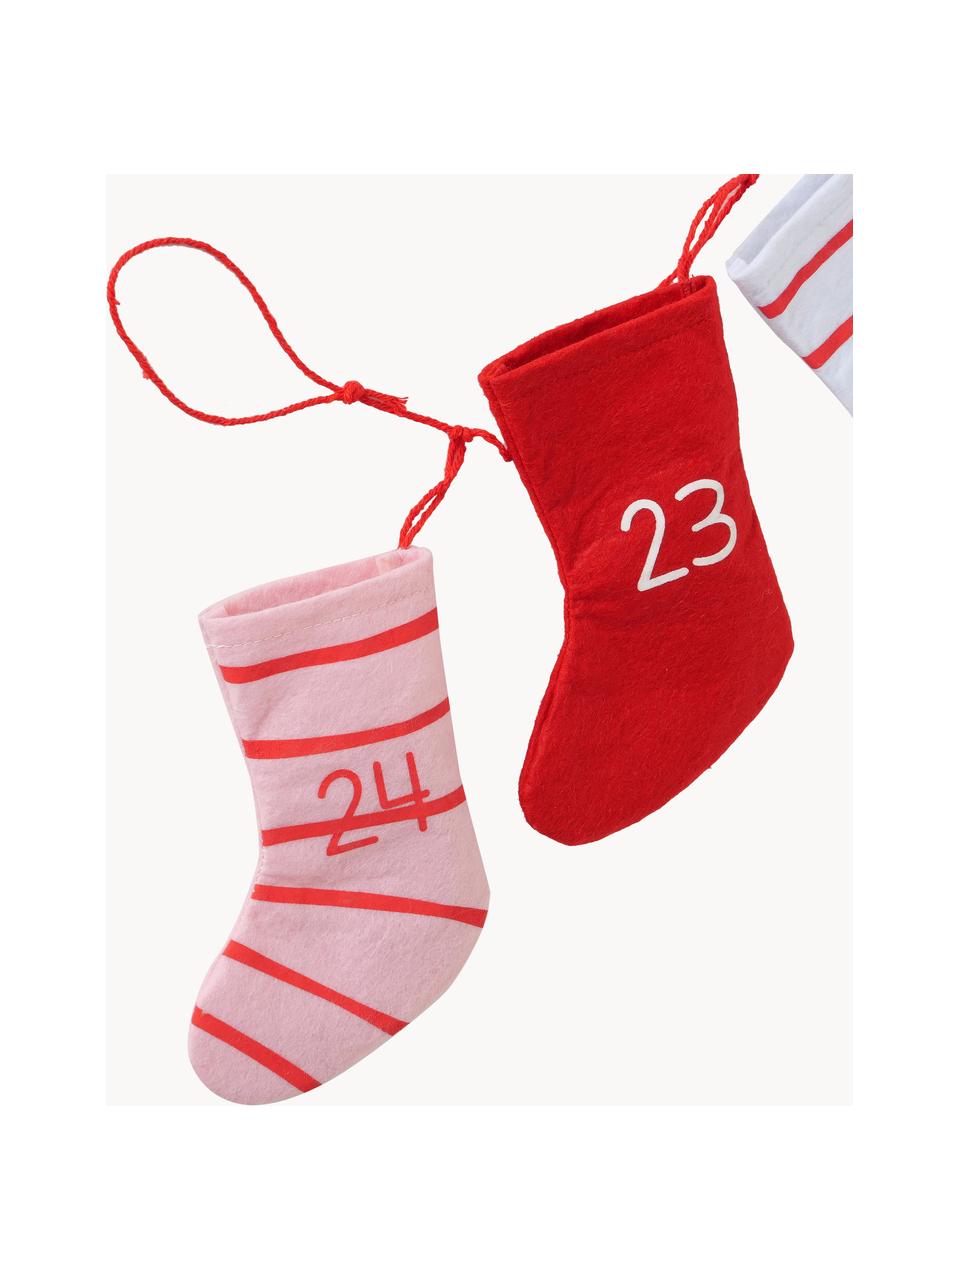 Adventskalender Socks L 200 cm, Vilt, Rood, roze, wit, L 200 cm